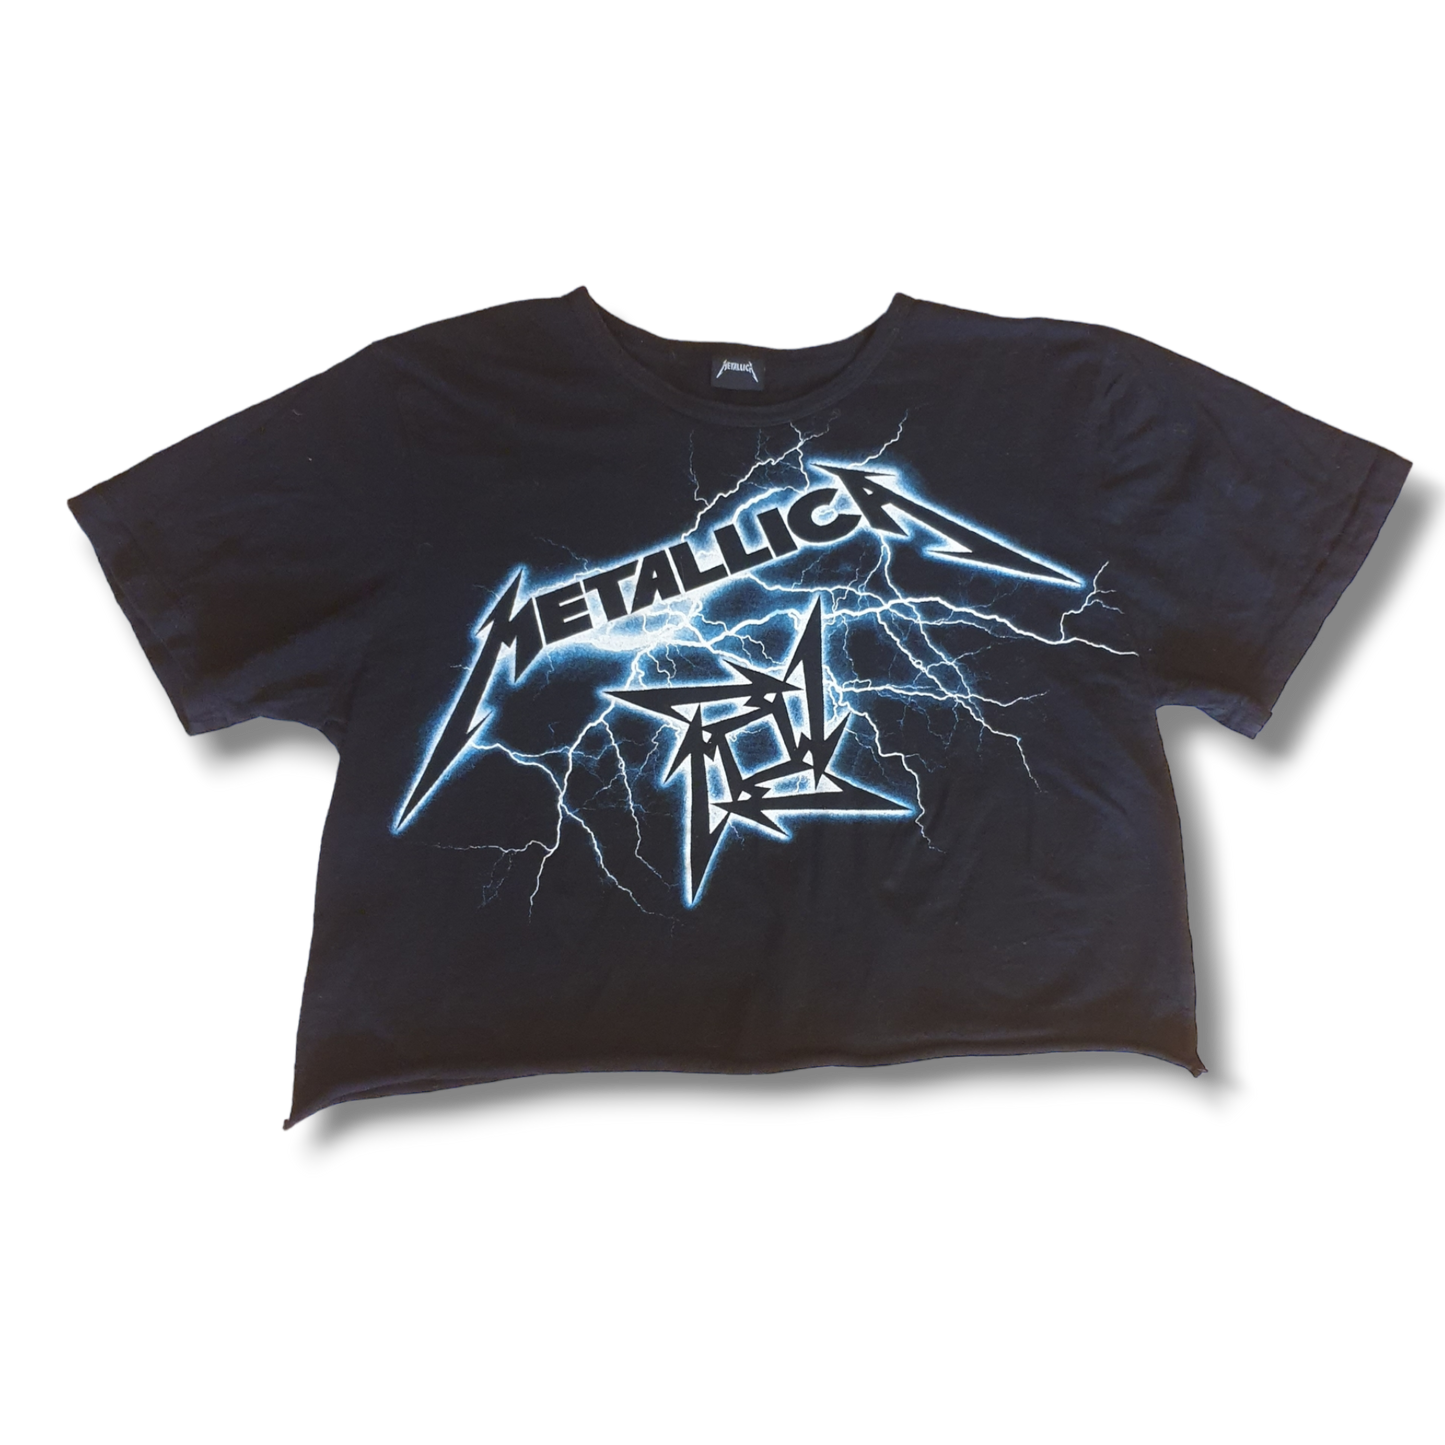 Official Metallica 2011 Cut Off Women's  T-Shirt S-M